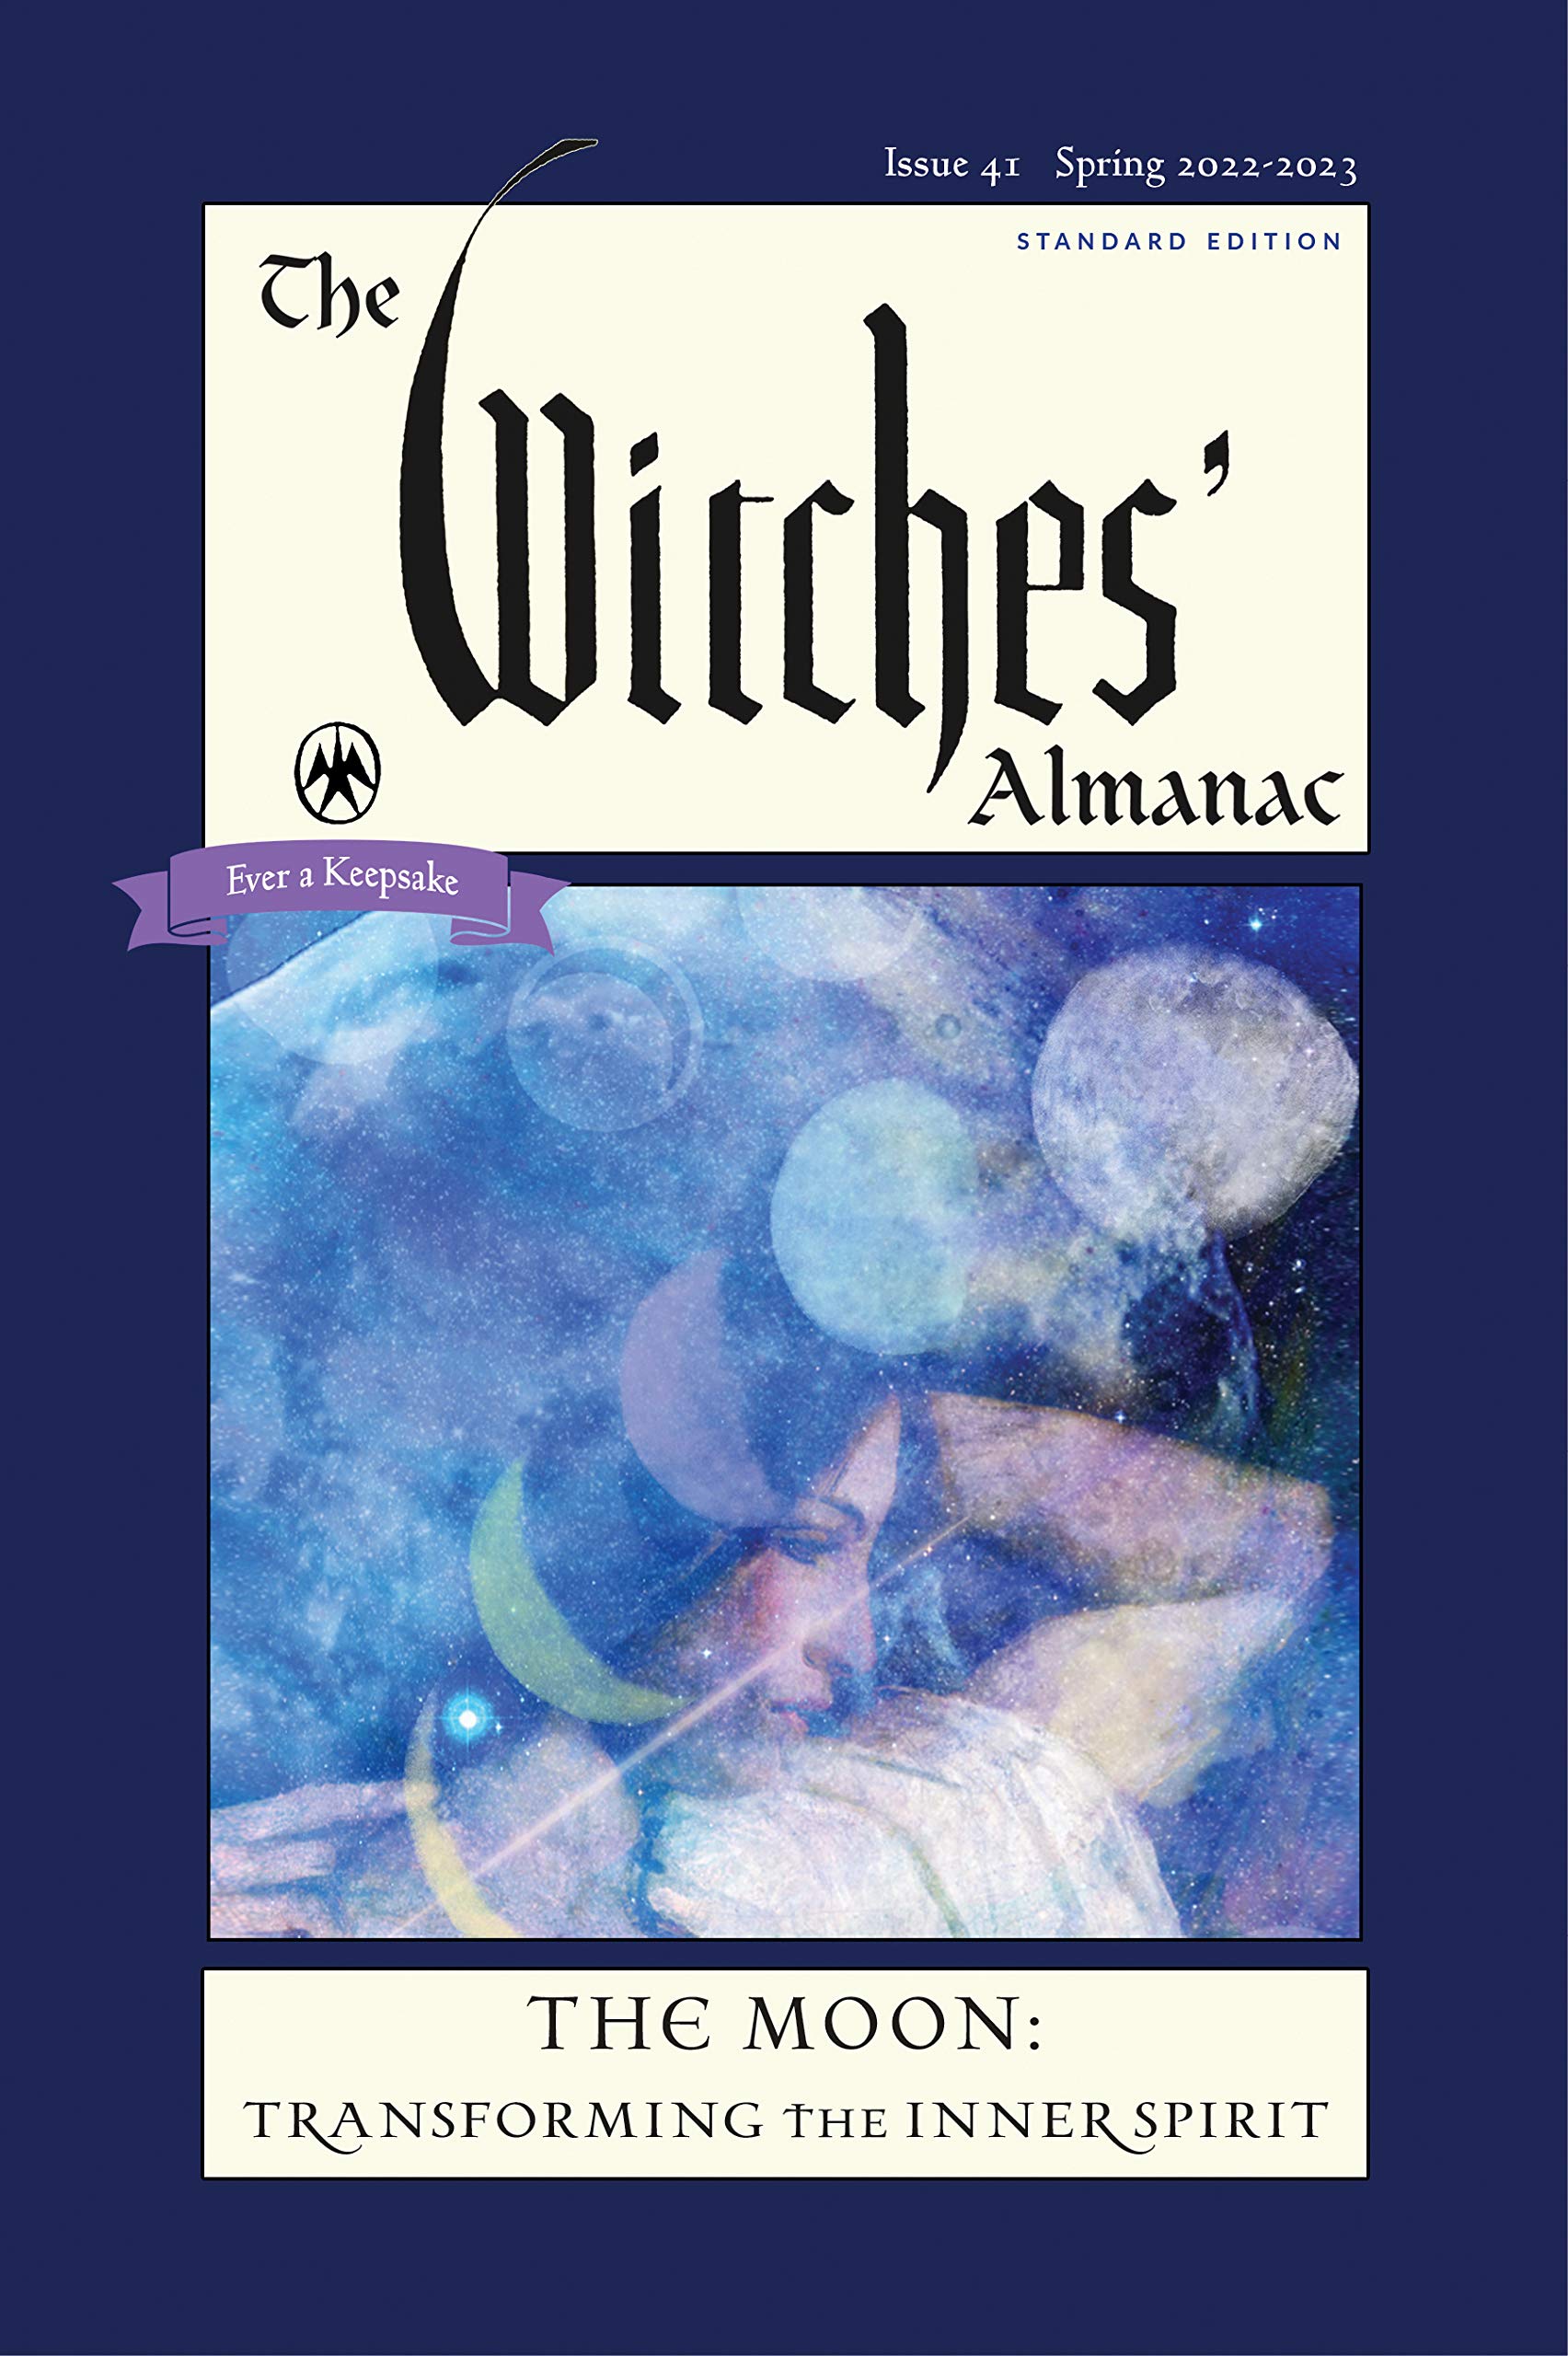 The Witches Almanac Calendar